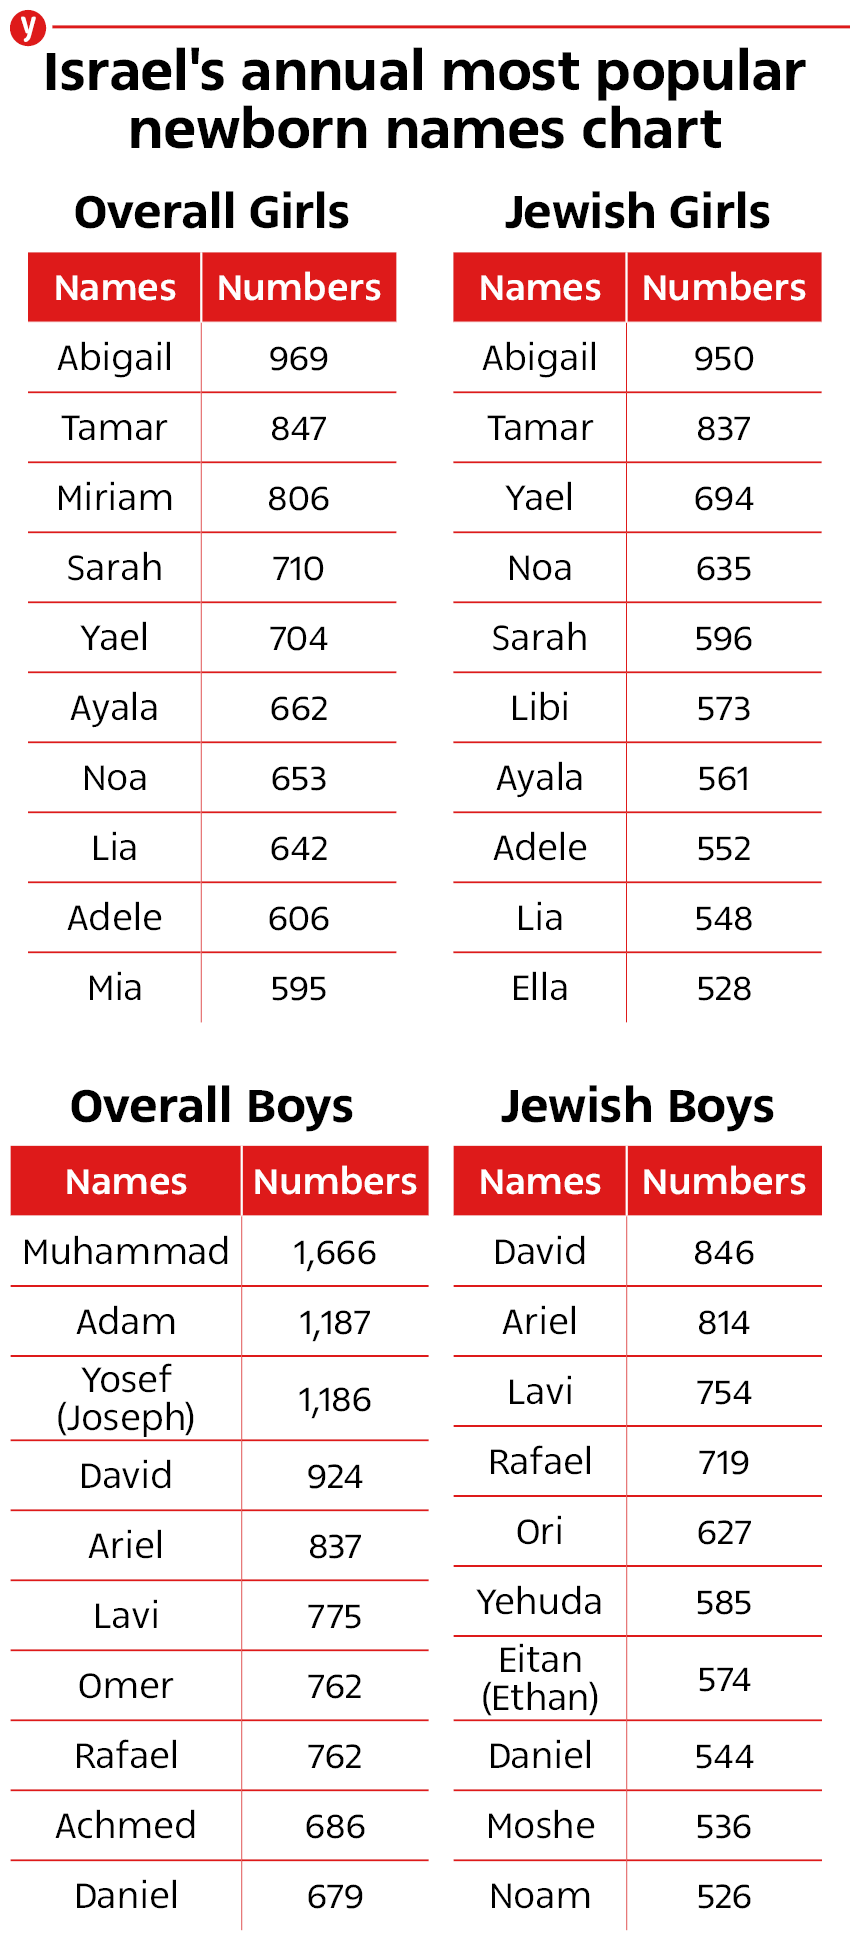 Israel's annual most popular newborn names chart